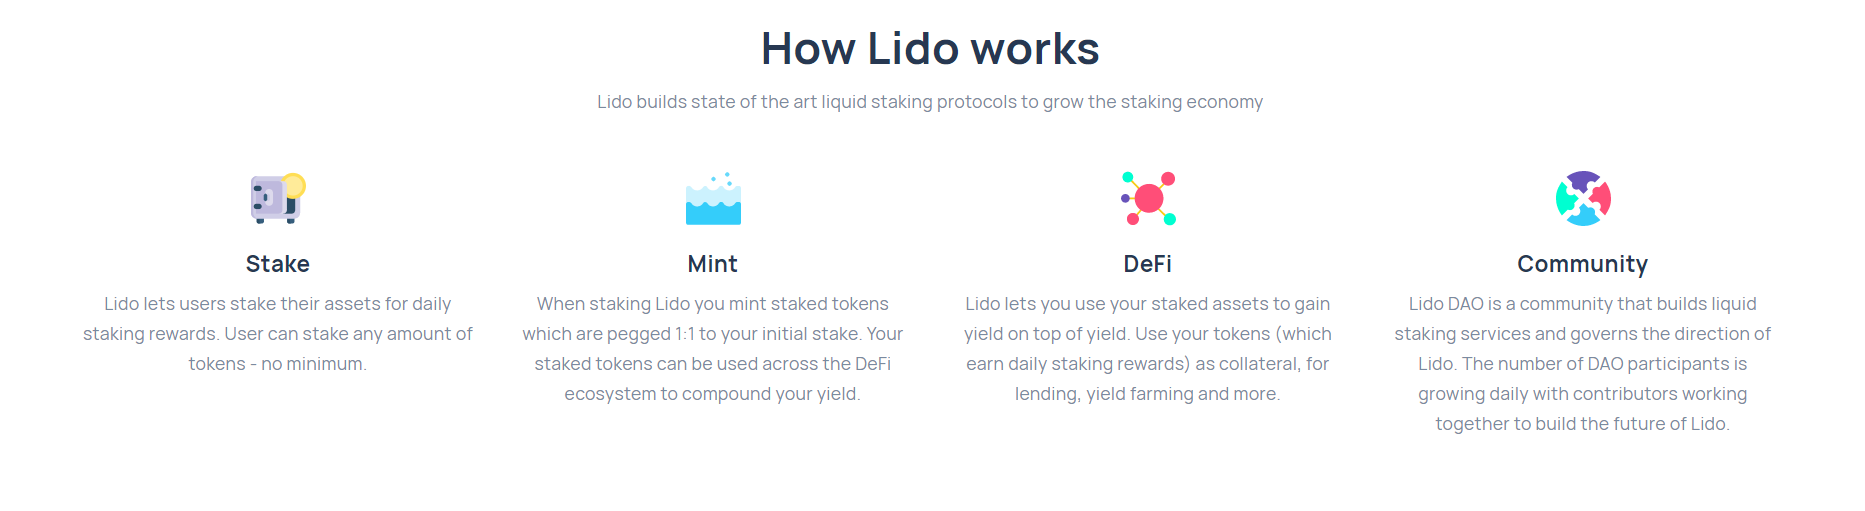 Should I buy LIDO crypto